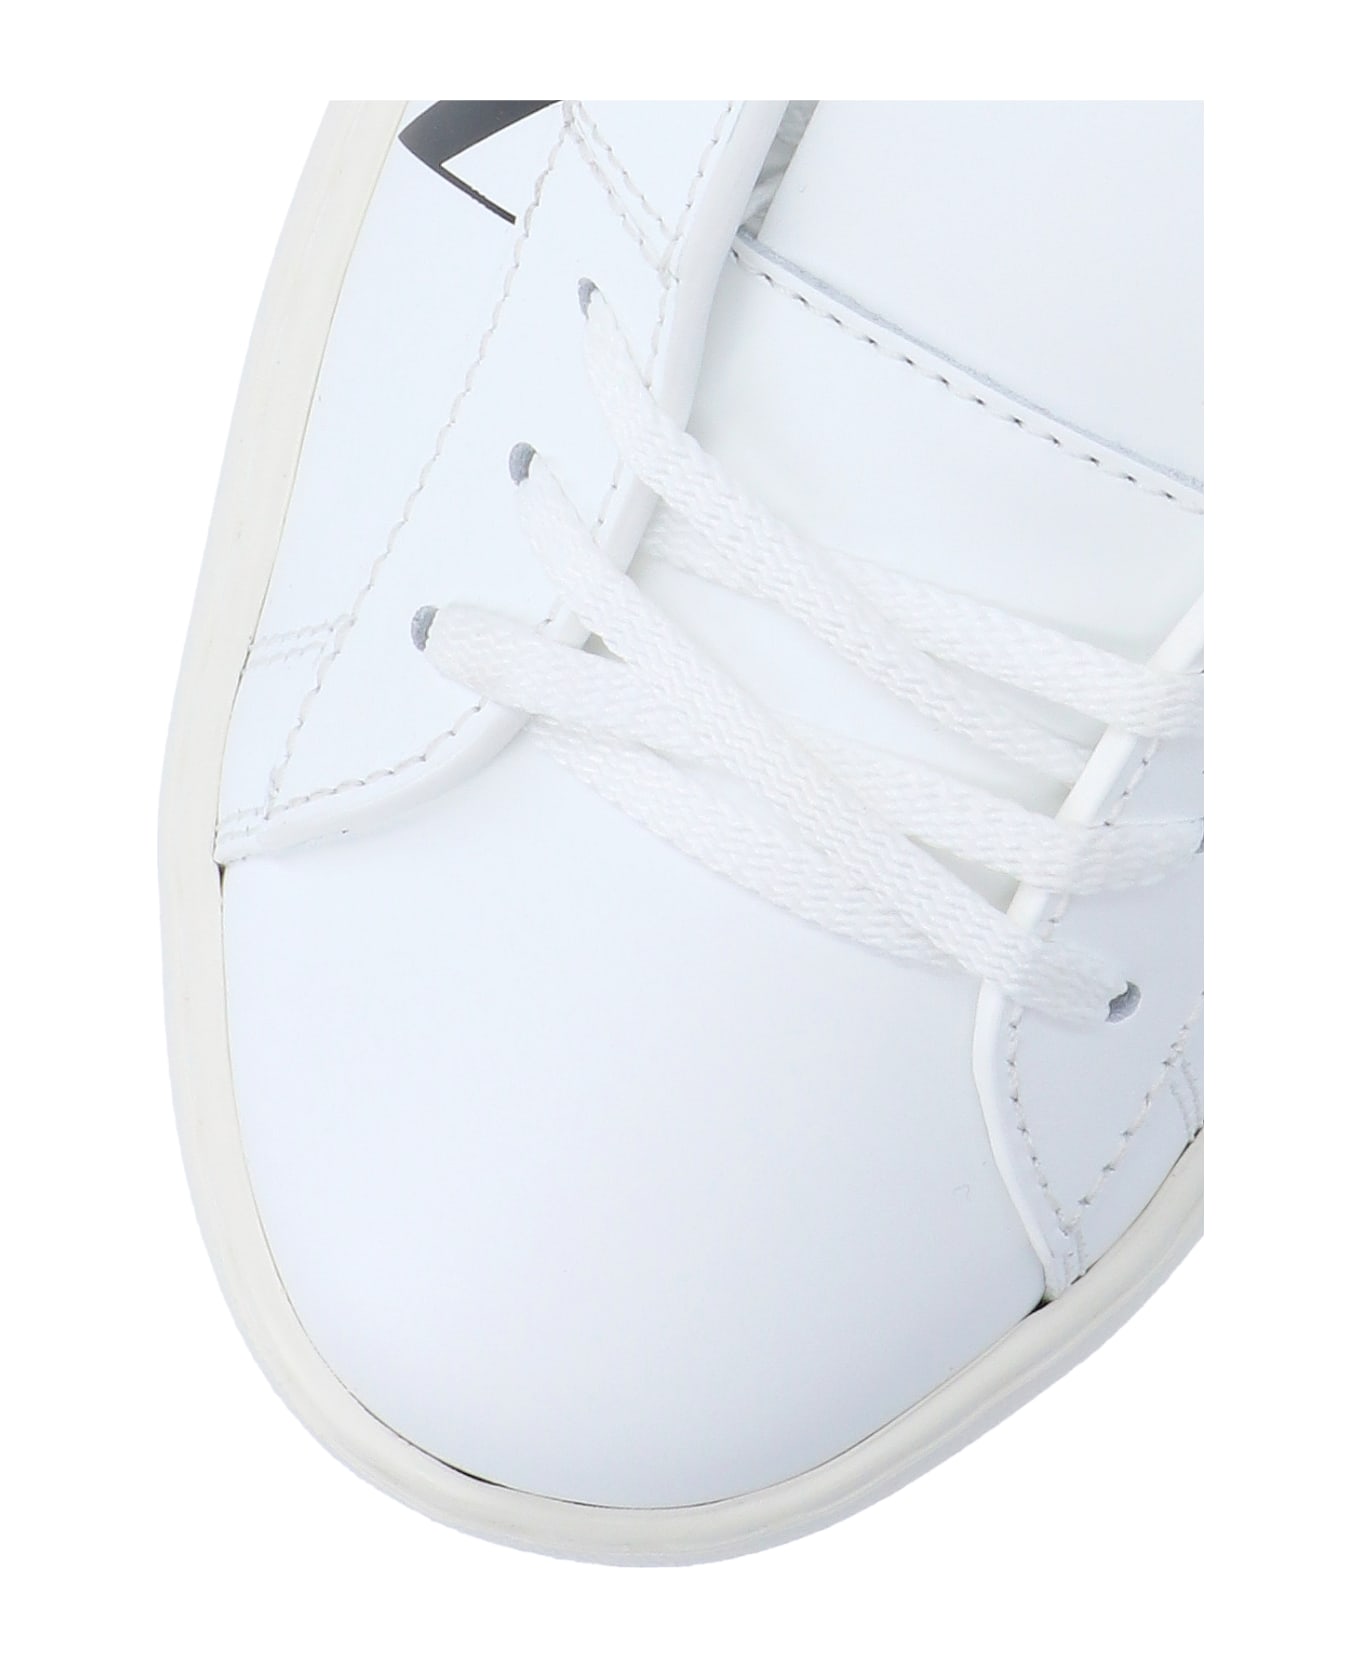 Valentino Garavani Garavani Vltn Sneakers - White